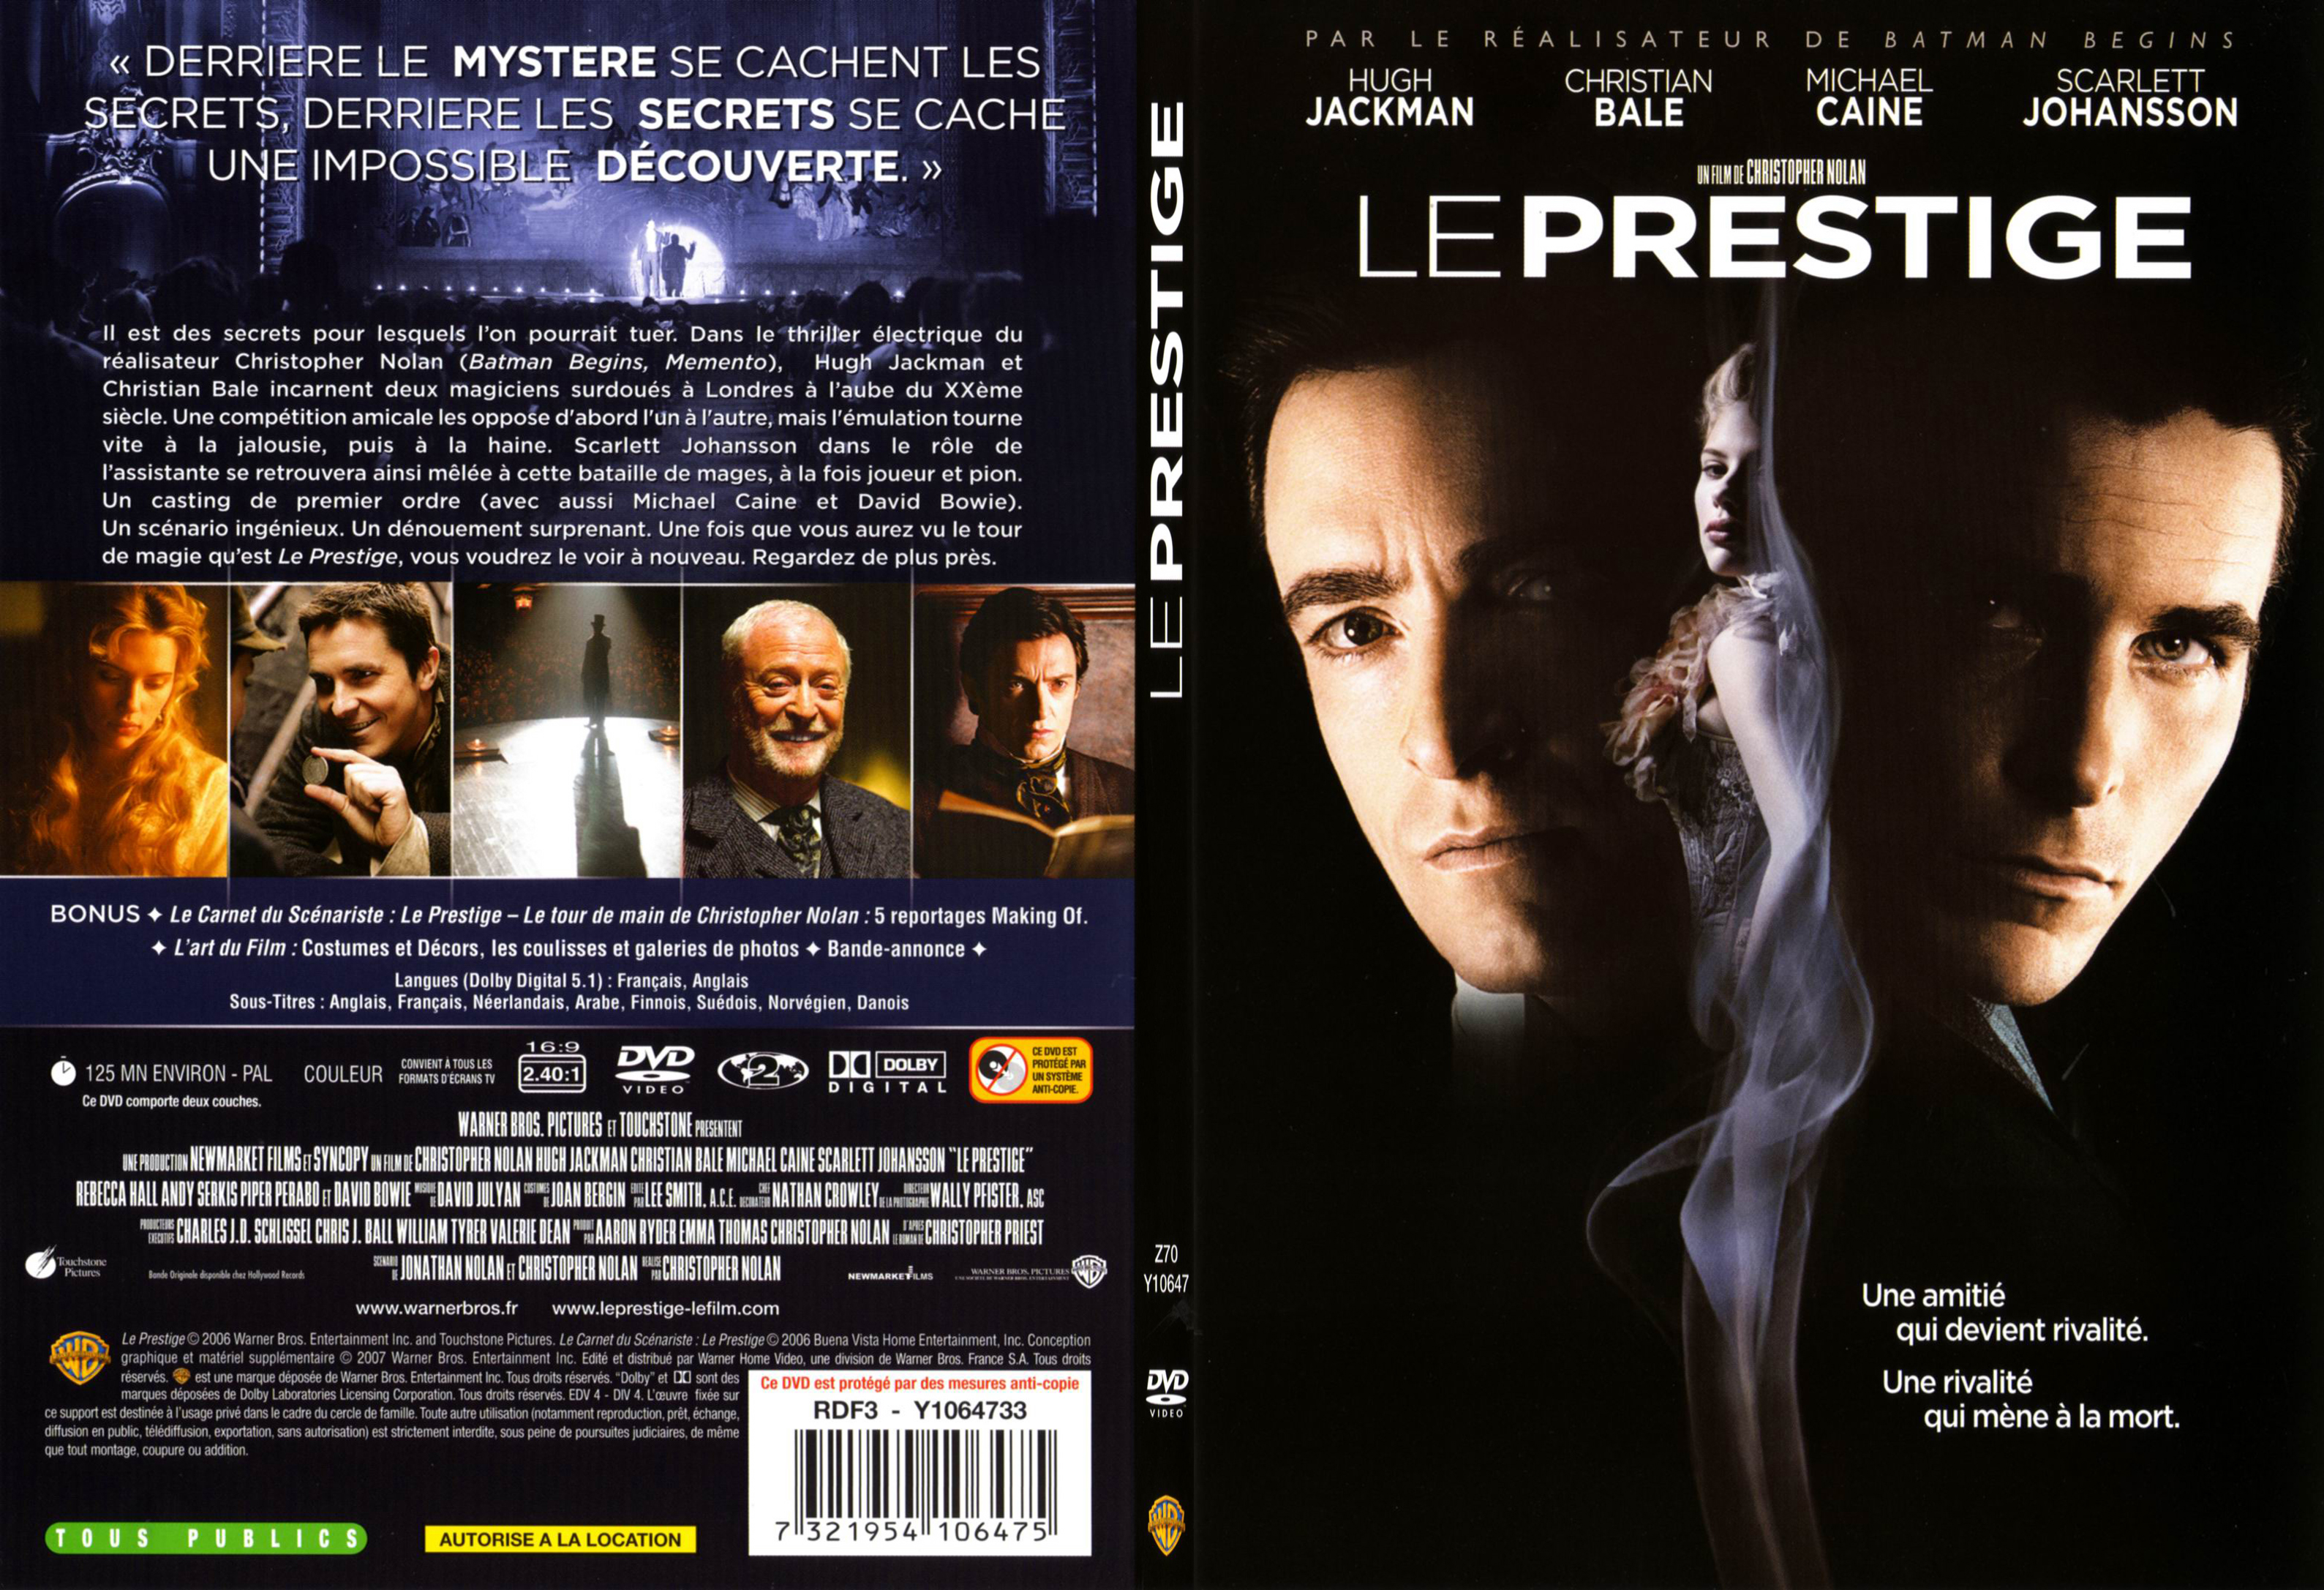 Jaquette DVD Le prestige - SLIM